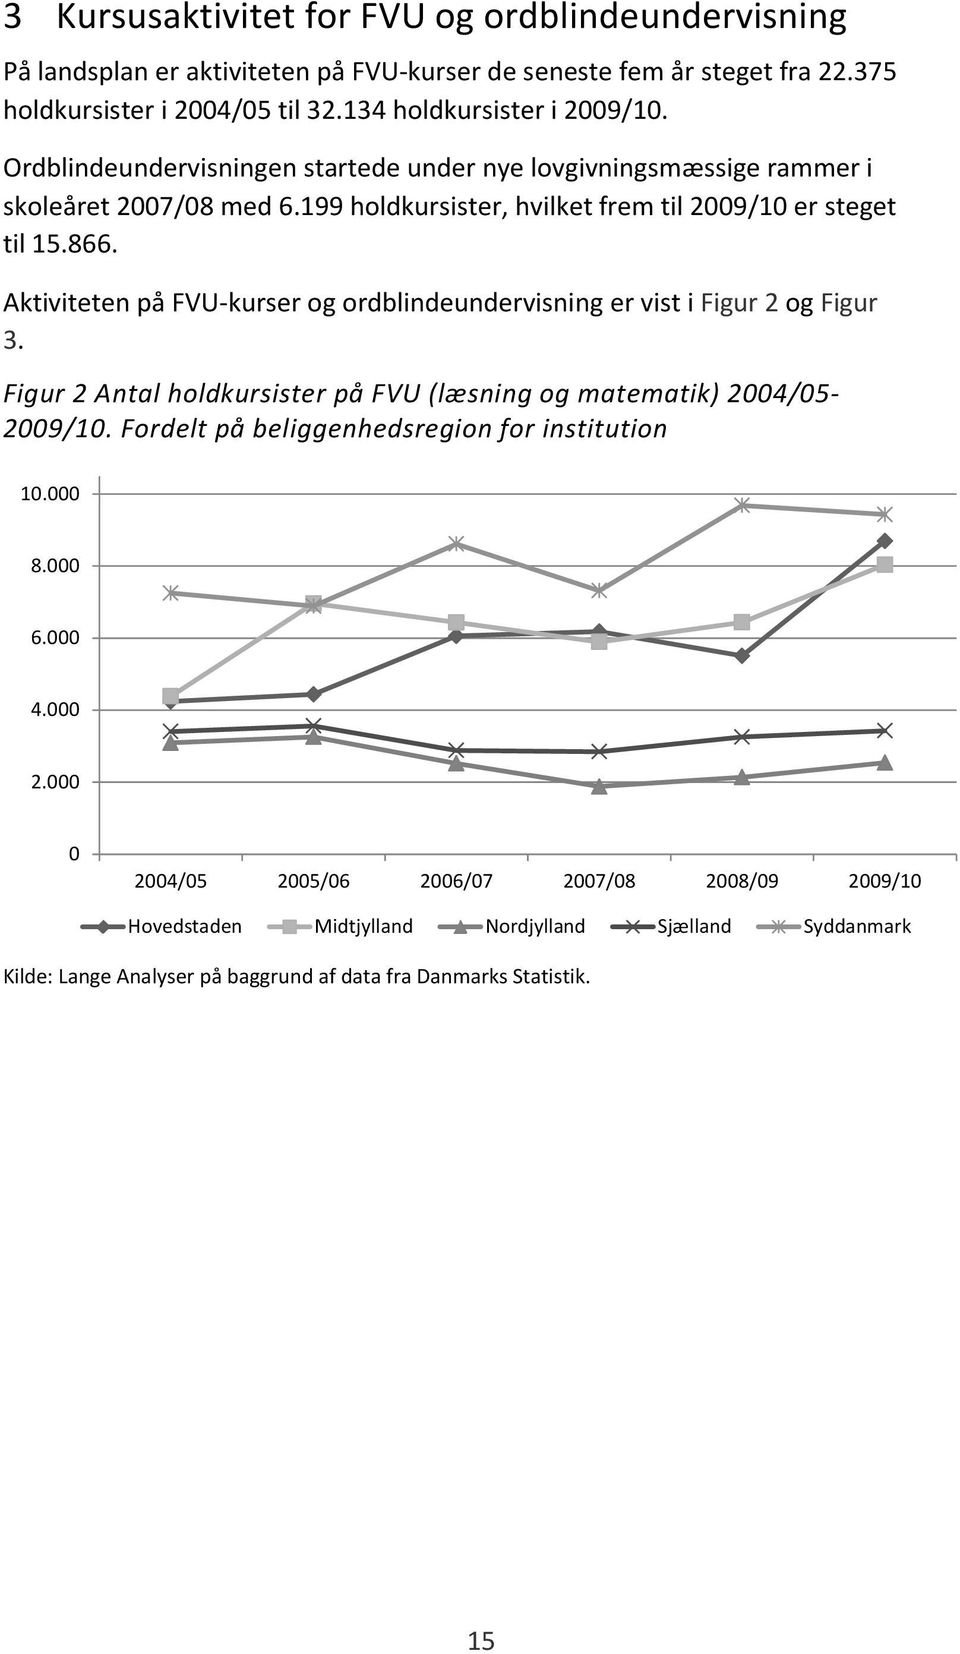 199 holdkursister, hvilket frem til 2009/10 er steget til 15.866. Aktiviteten på FVU-kurser og ordblindeundervisning er vist i Figur 2 og Figur 3.